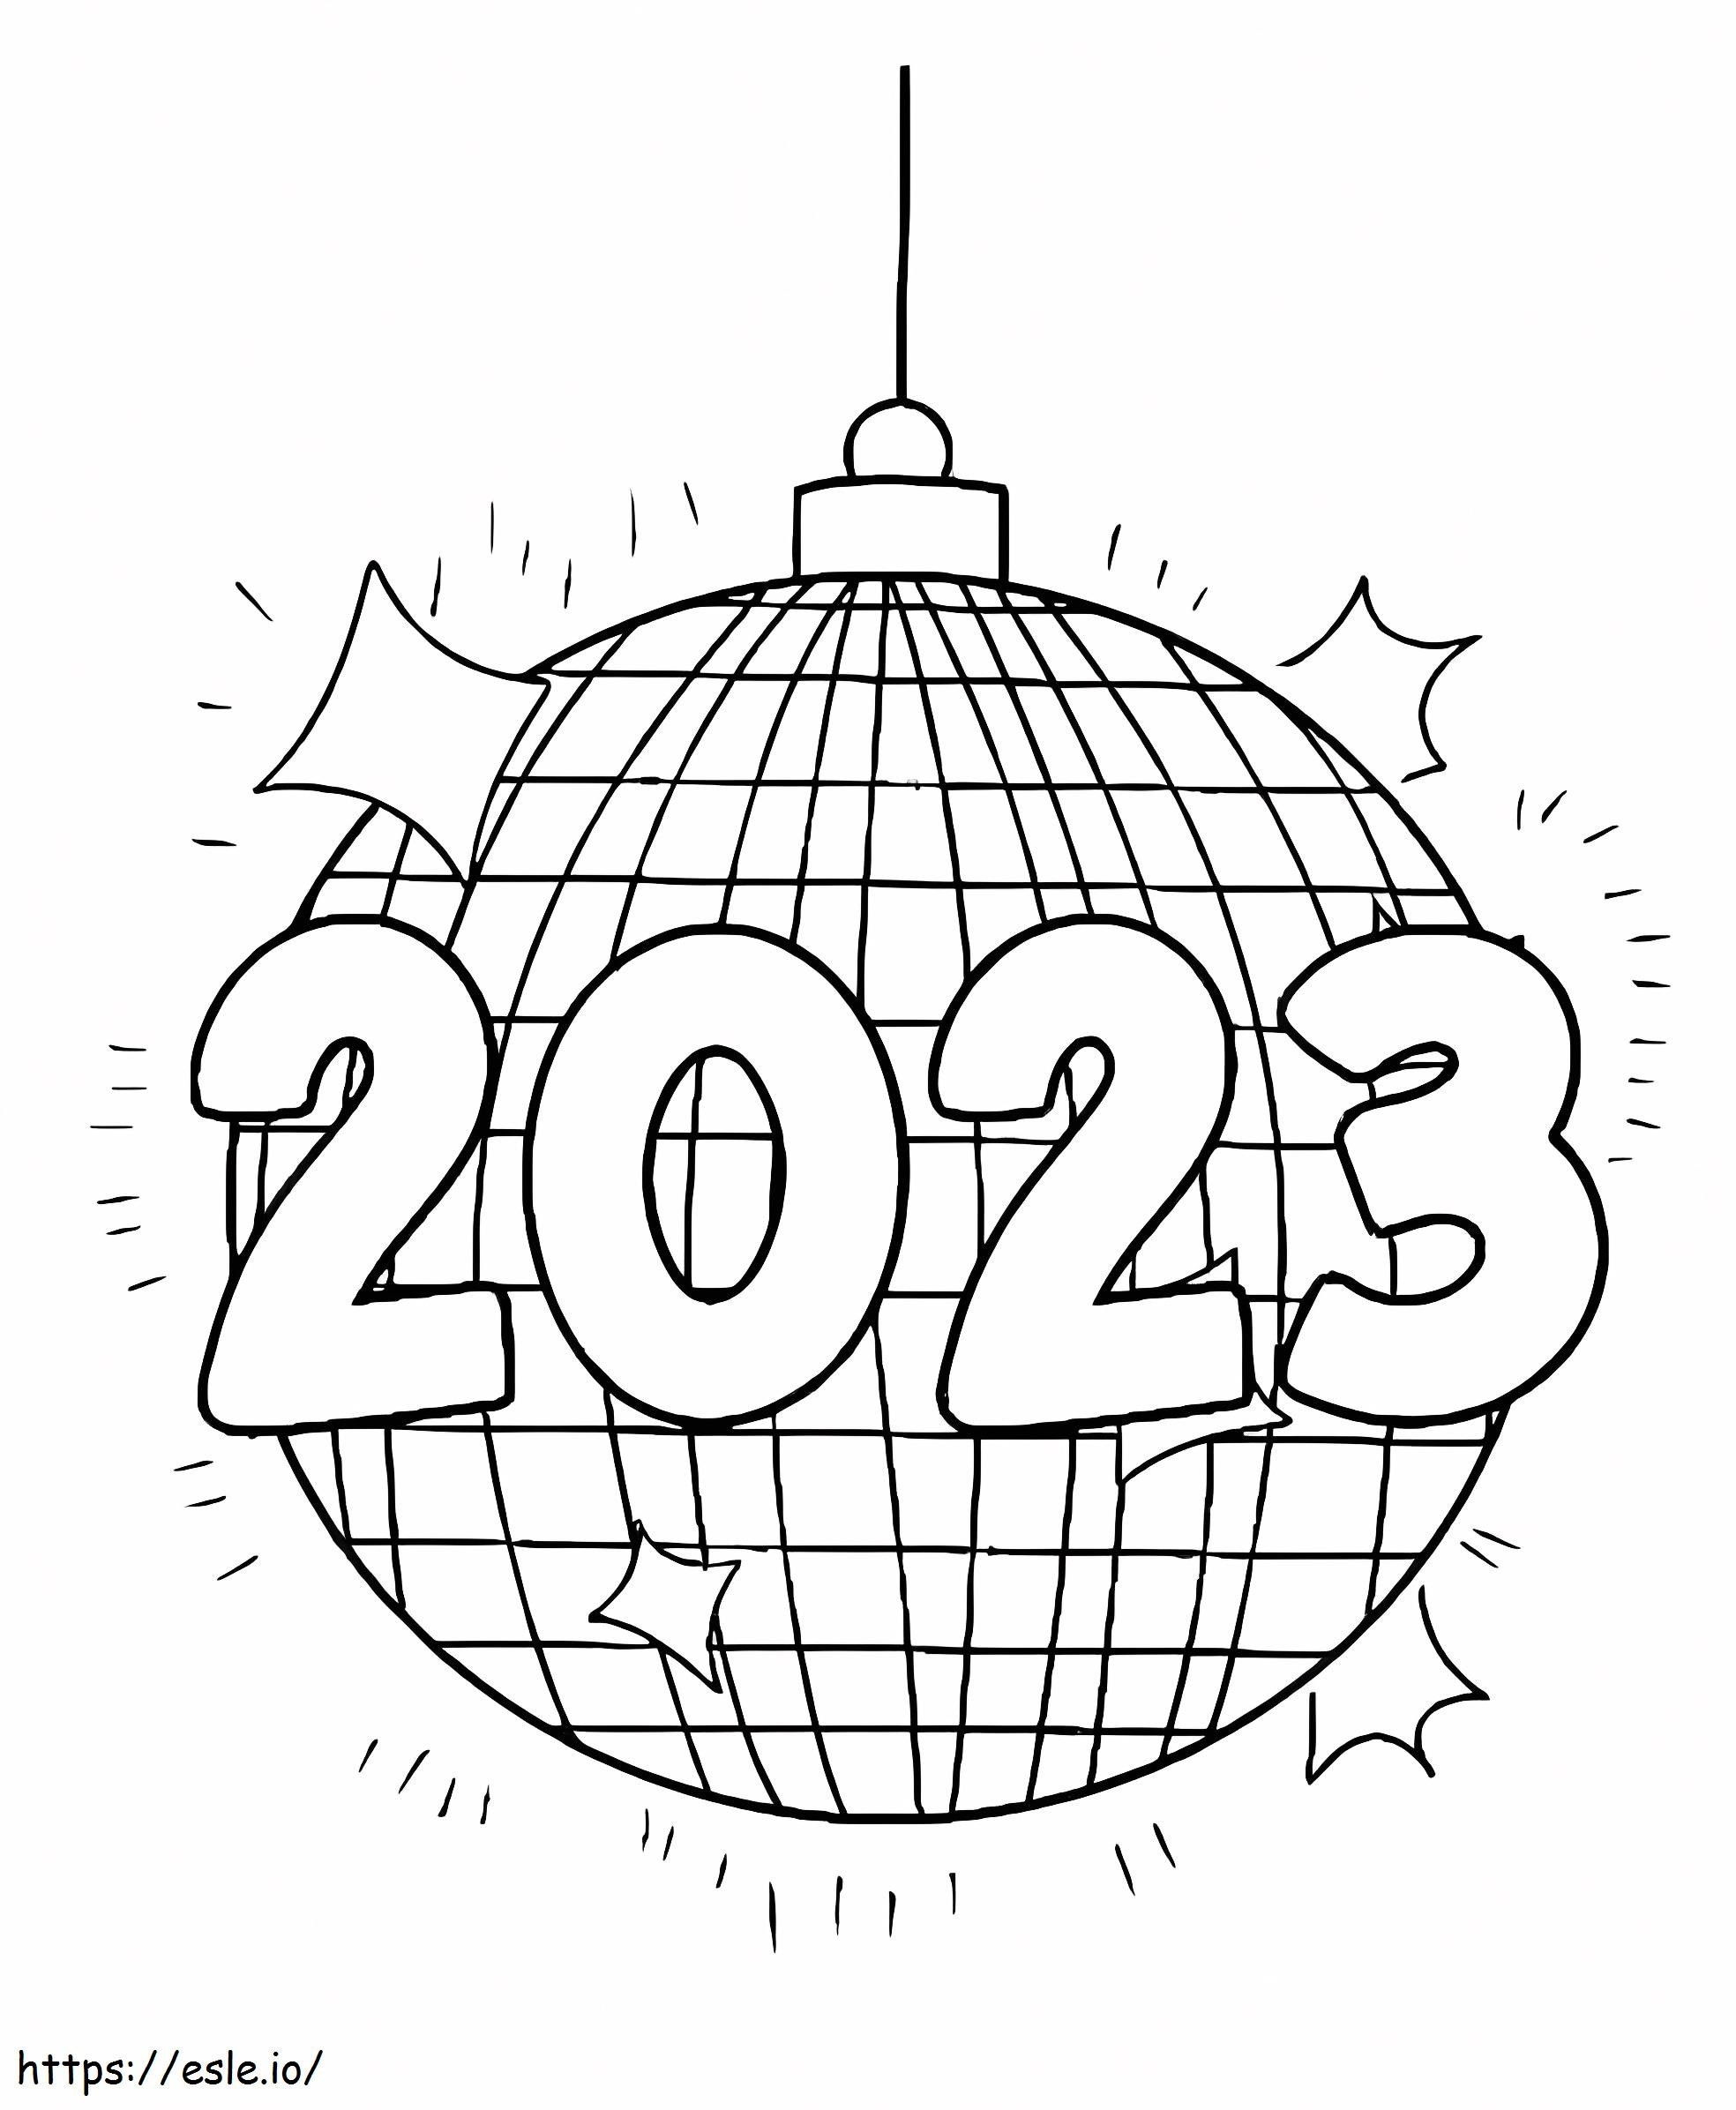 Yıl 2023 Disko Topu ile boyama